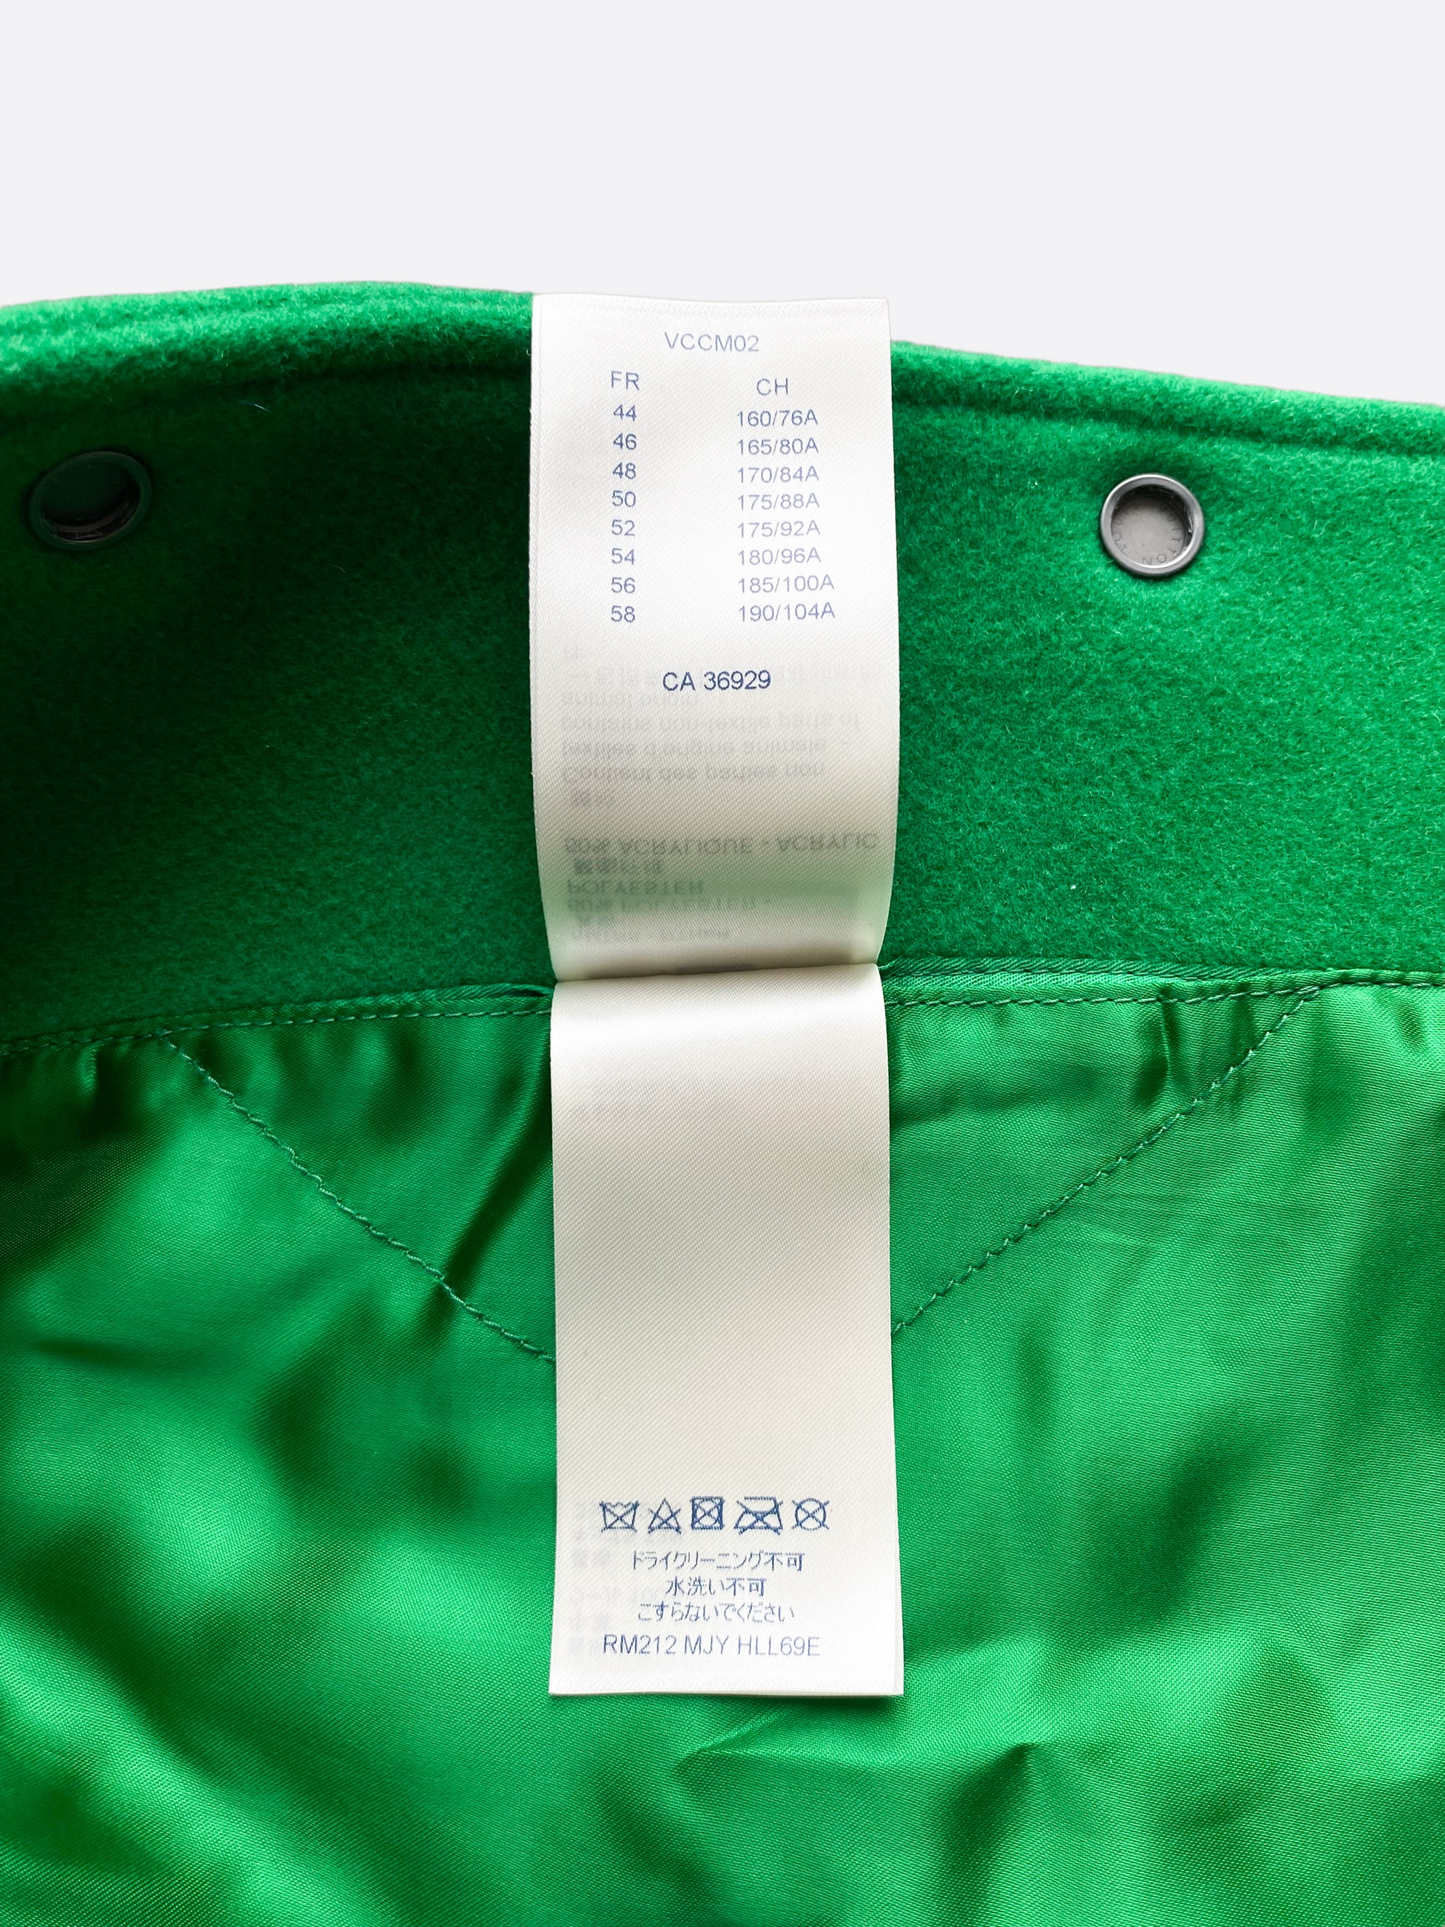 Louis Vuitton Green & White Varsity Leather Jacket – Savonches